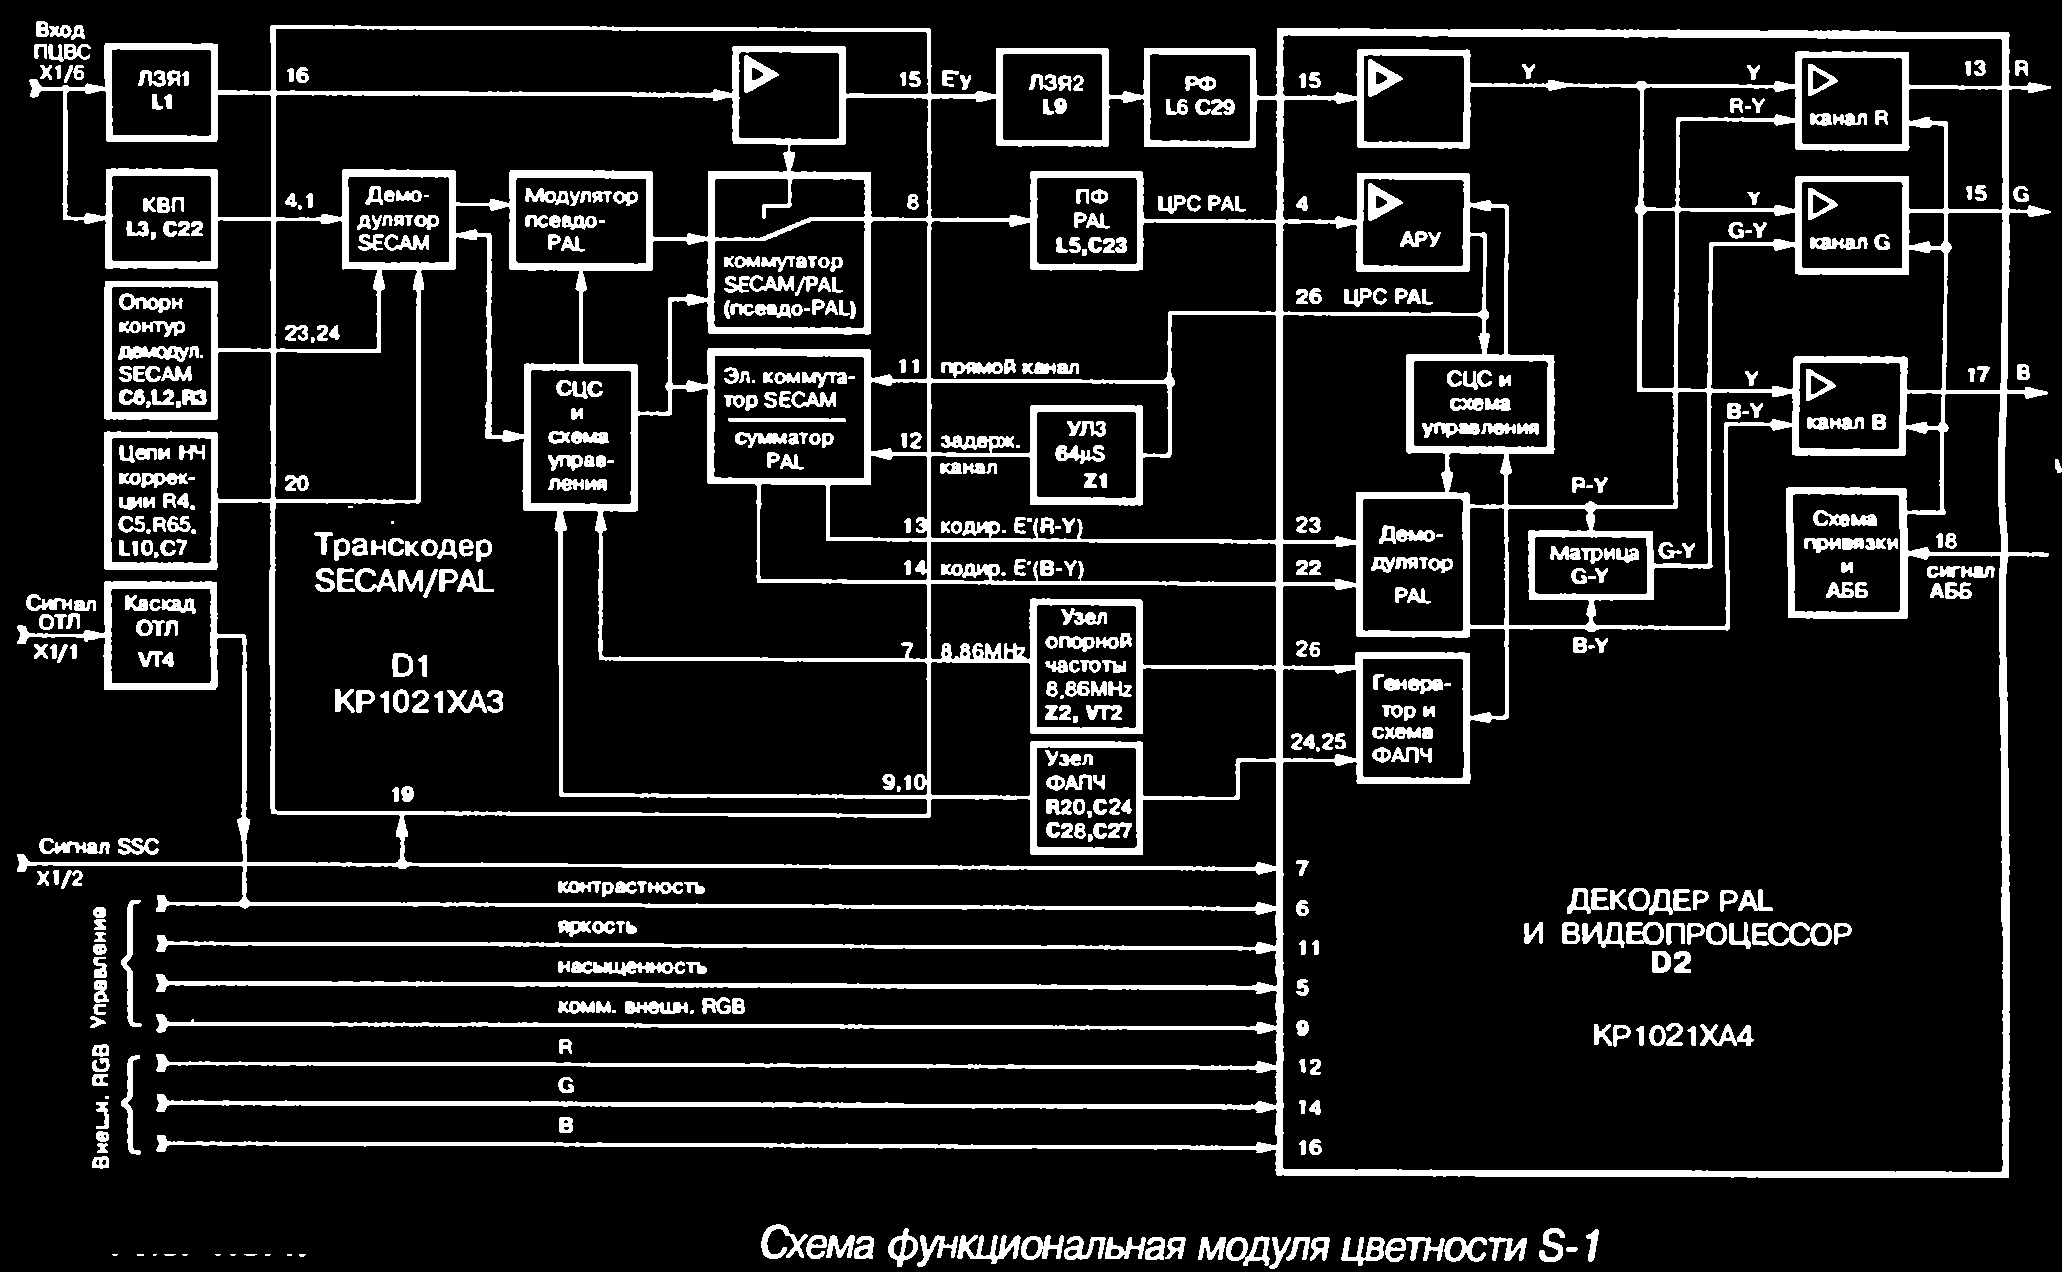 Схема модуля цветности S-1 и платы кинескопа КР-1